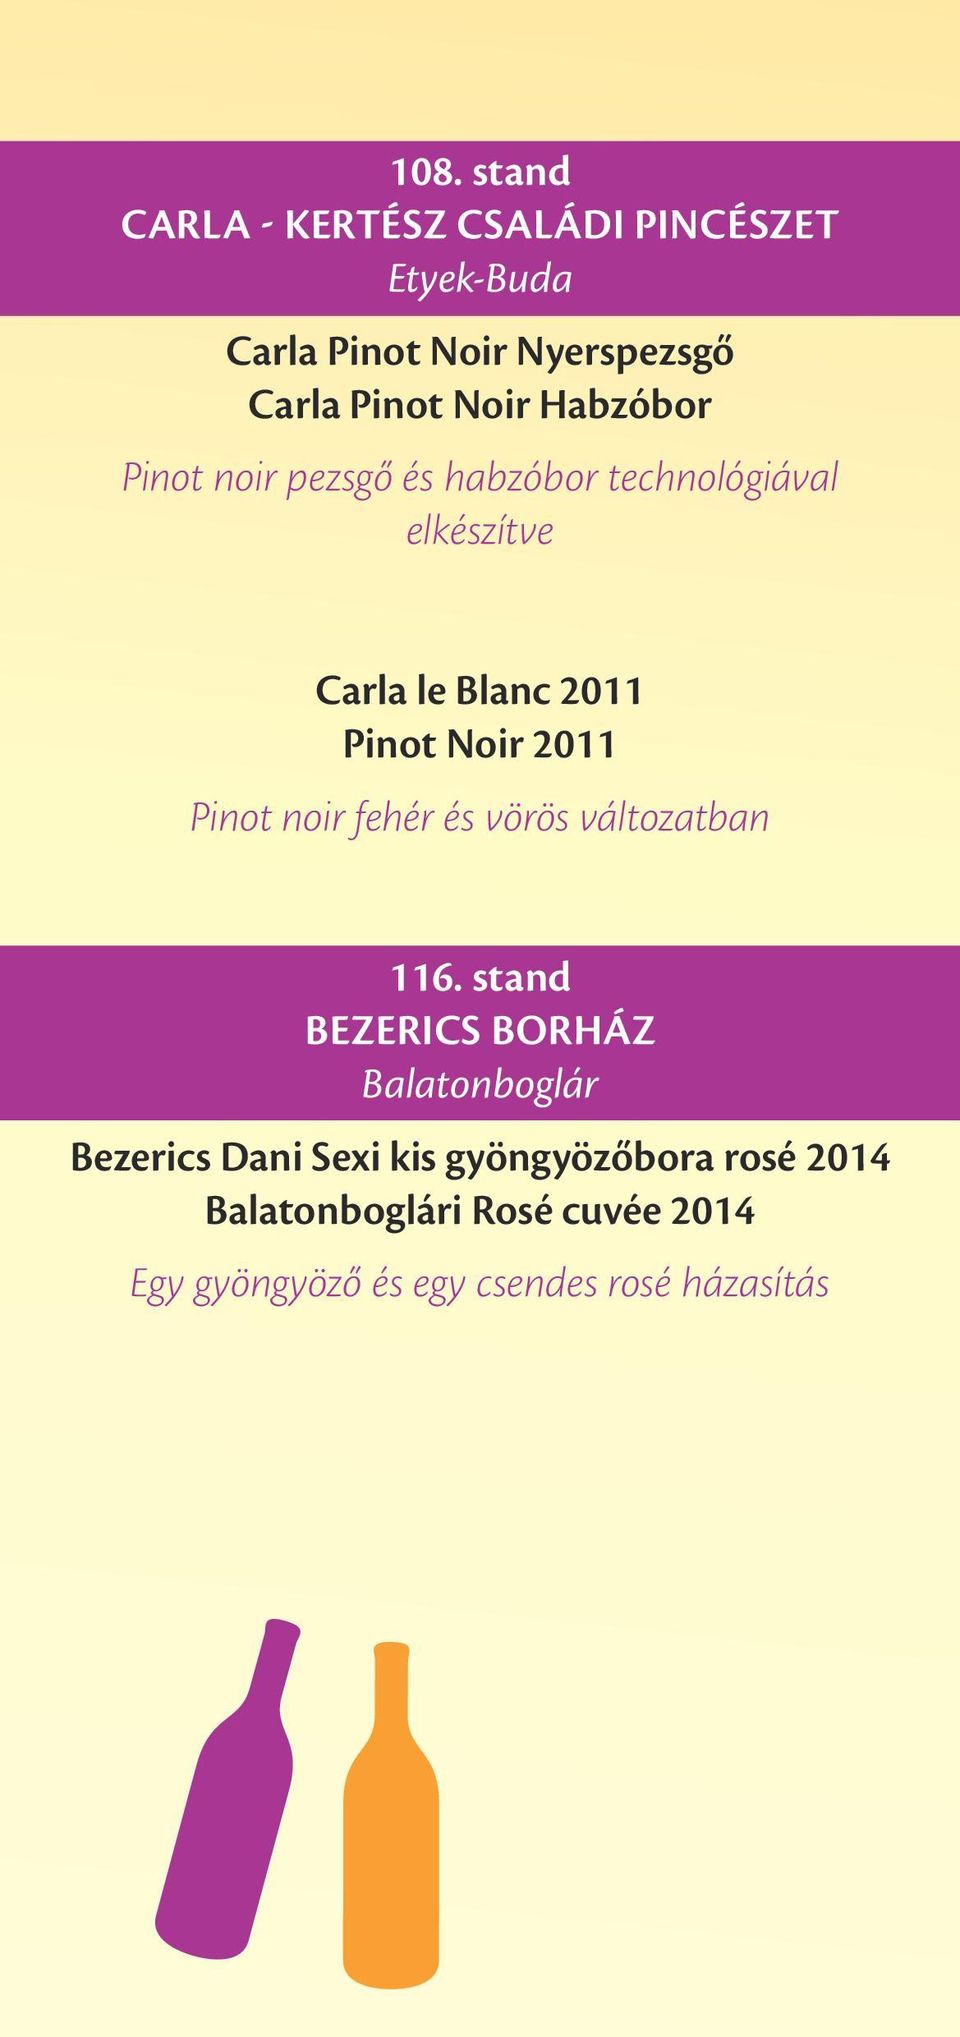 2011 Pinot noir fehér és vörös változatban 116.